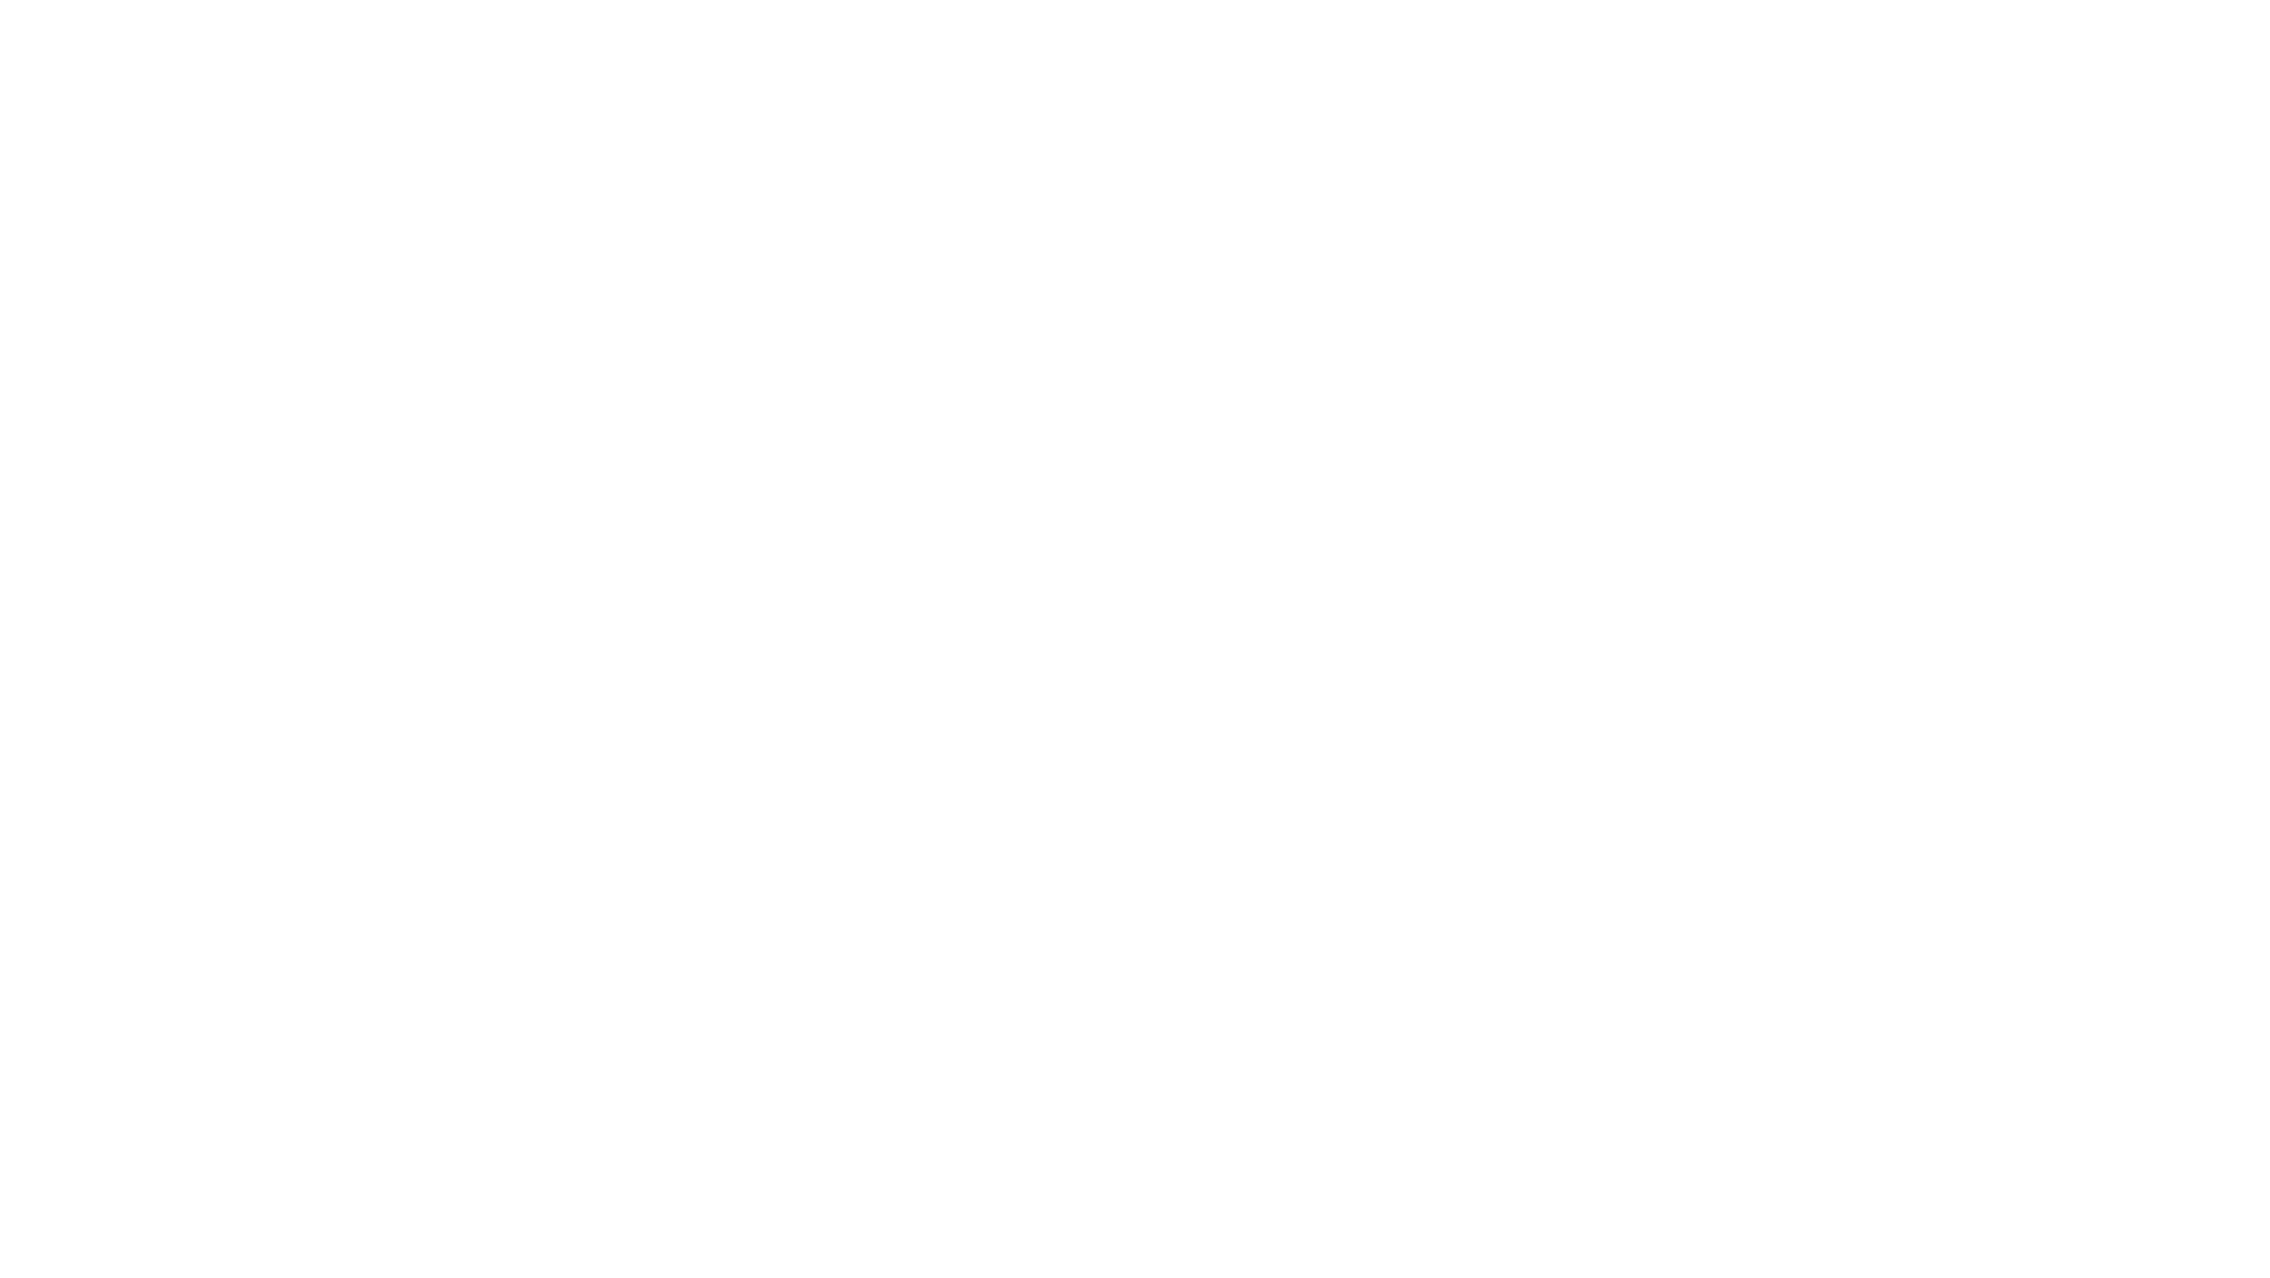 Tyger Tyger logo